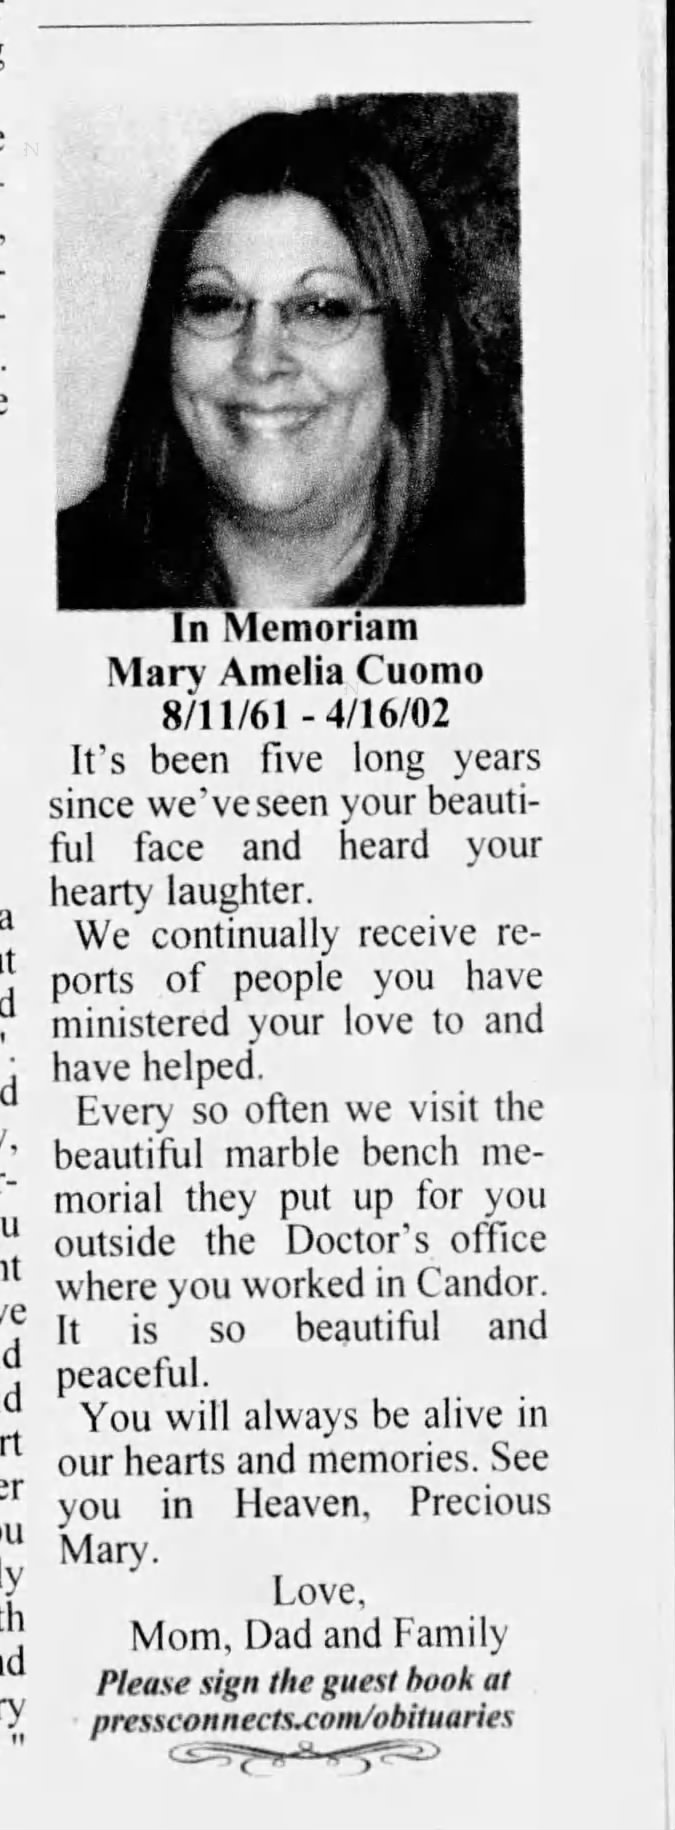 Memoriam to Mary Amelia Cuomo 
4-16-2002 / 4-16-2007  5 years